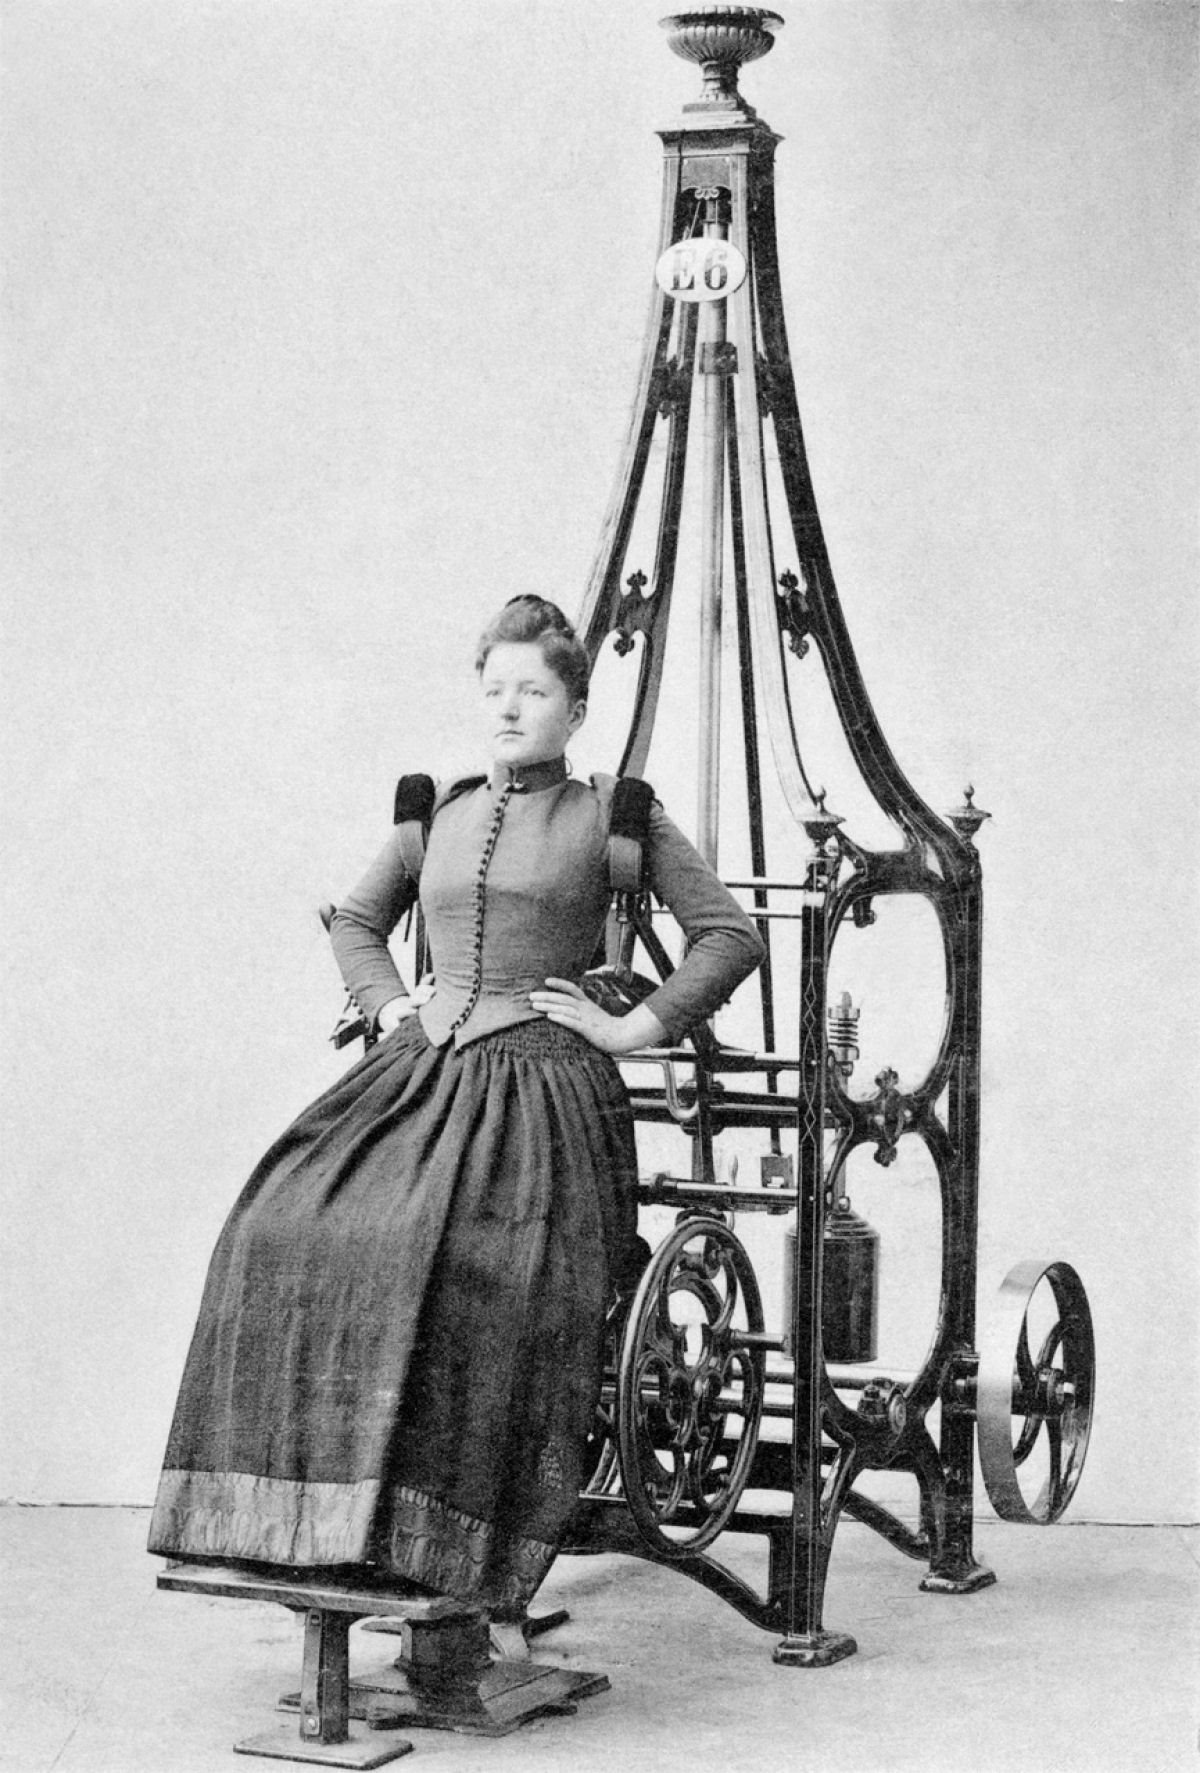 Suor e corset. Academia mecânica no século XIX 06